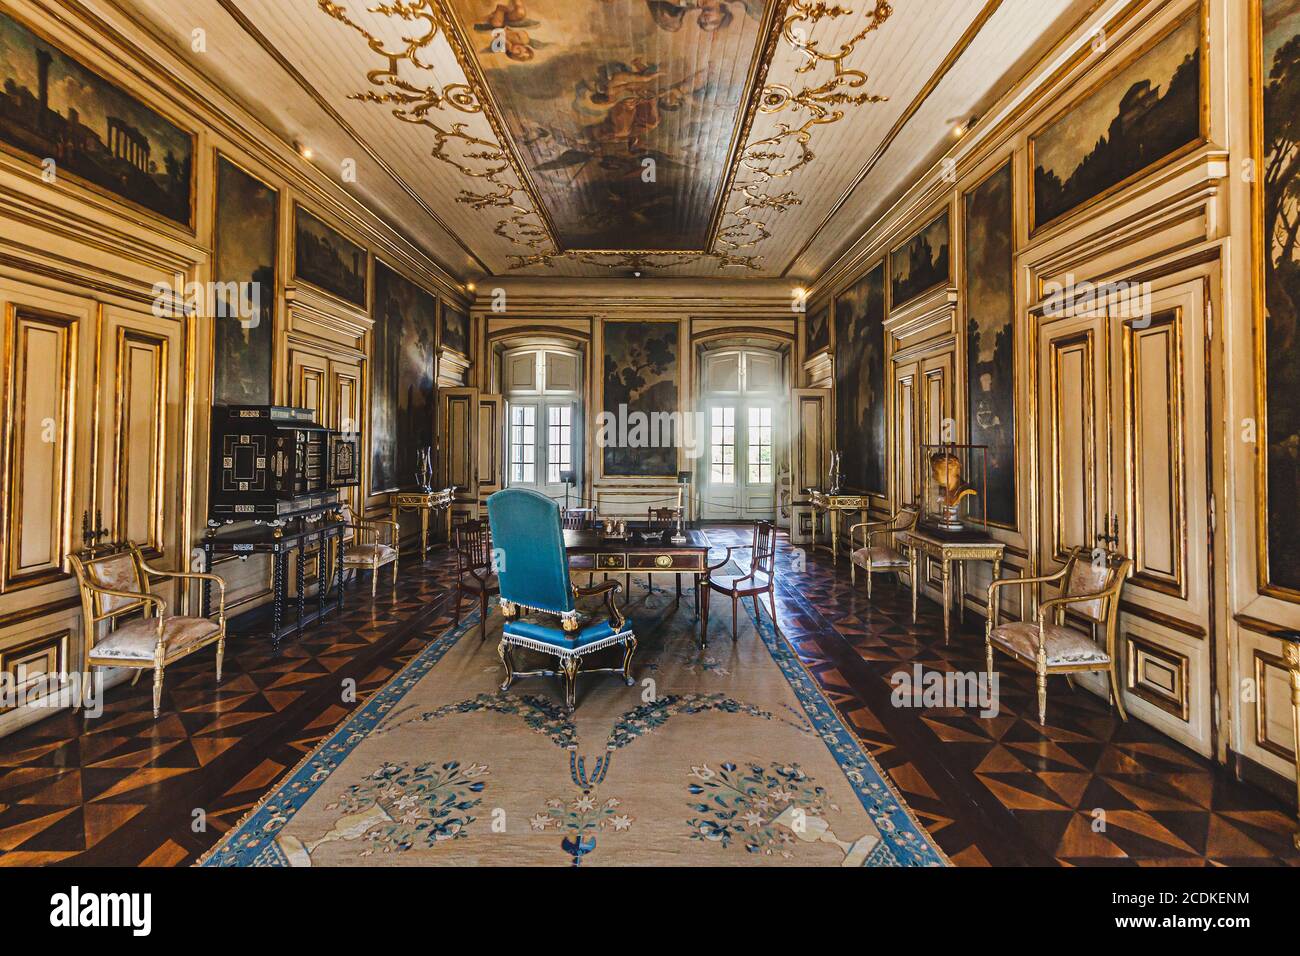 Una habitación del Palacio Nacional de Queluz, fue construida entre 1747 y 1794 para el rey Pedro y su esposa. Sintra, Portugal Foto de stock